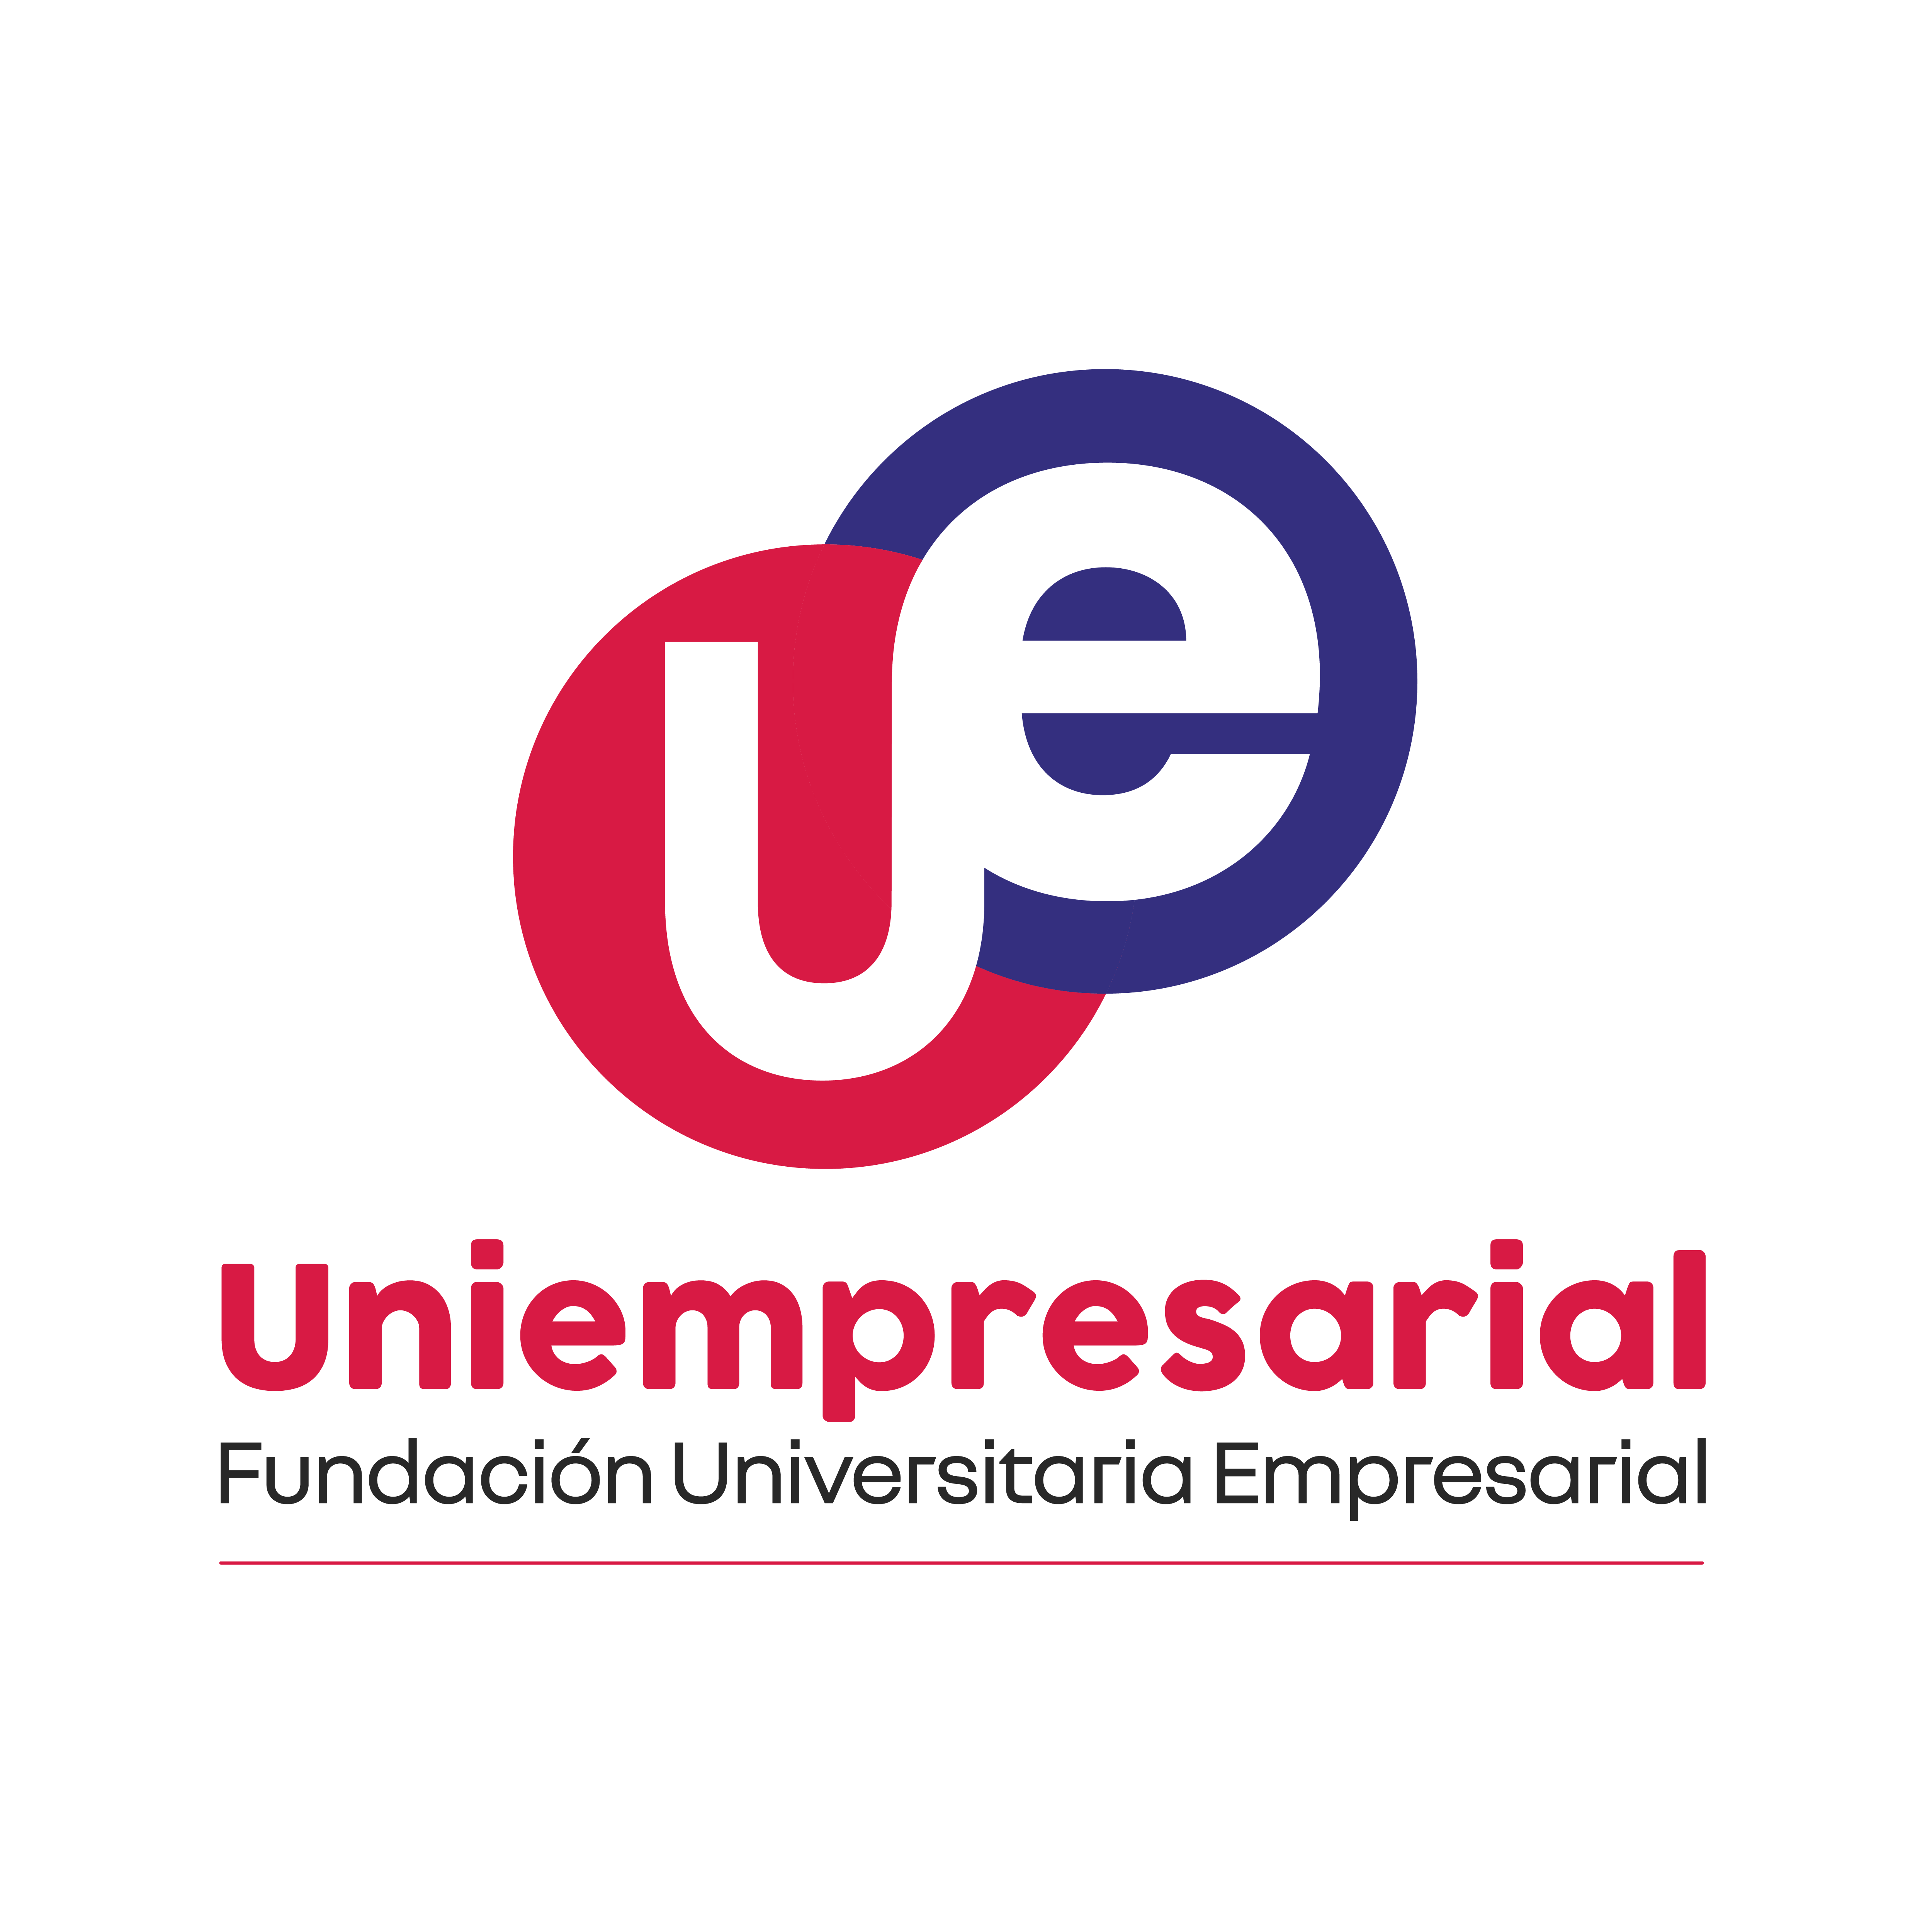 Fundación universitaria Uniempresarial